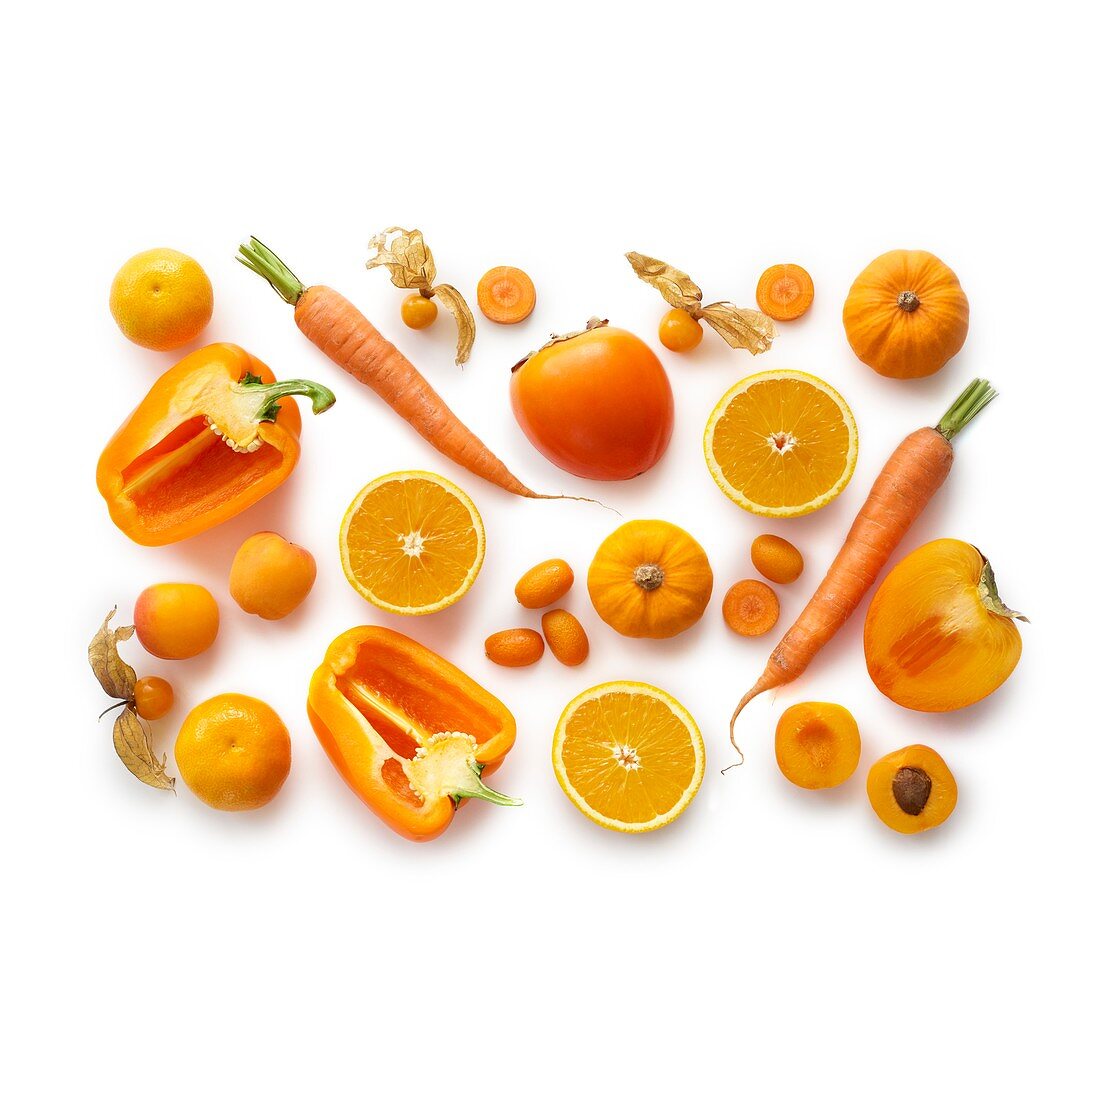 Fresh orange produce